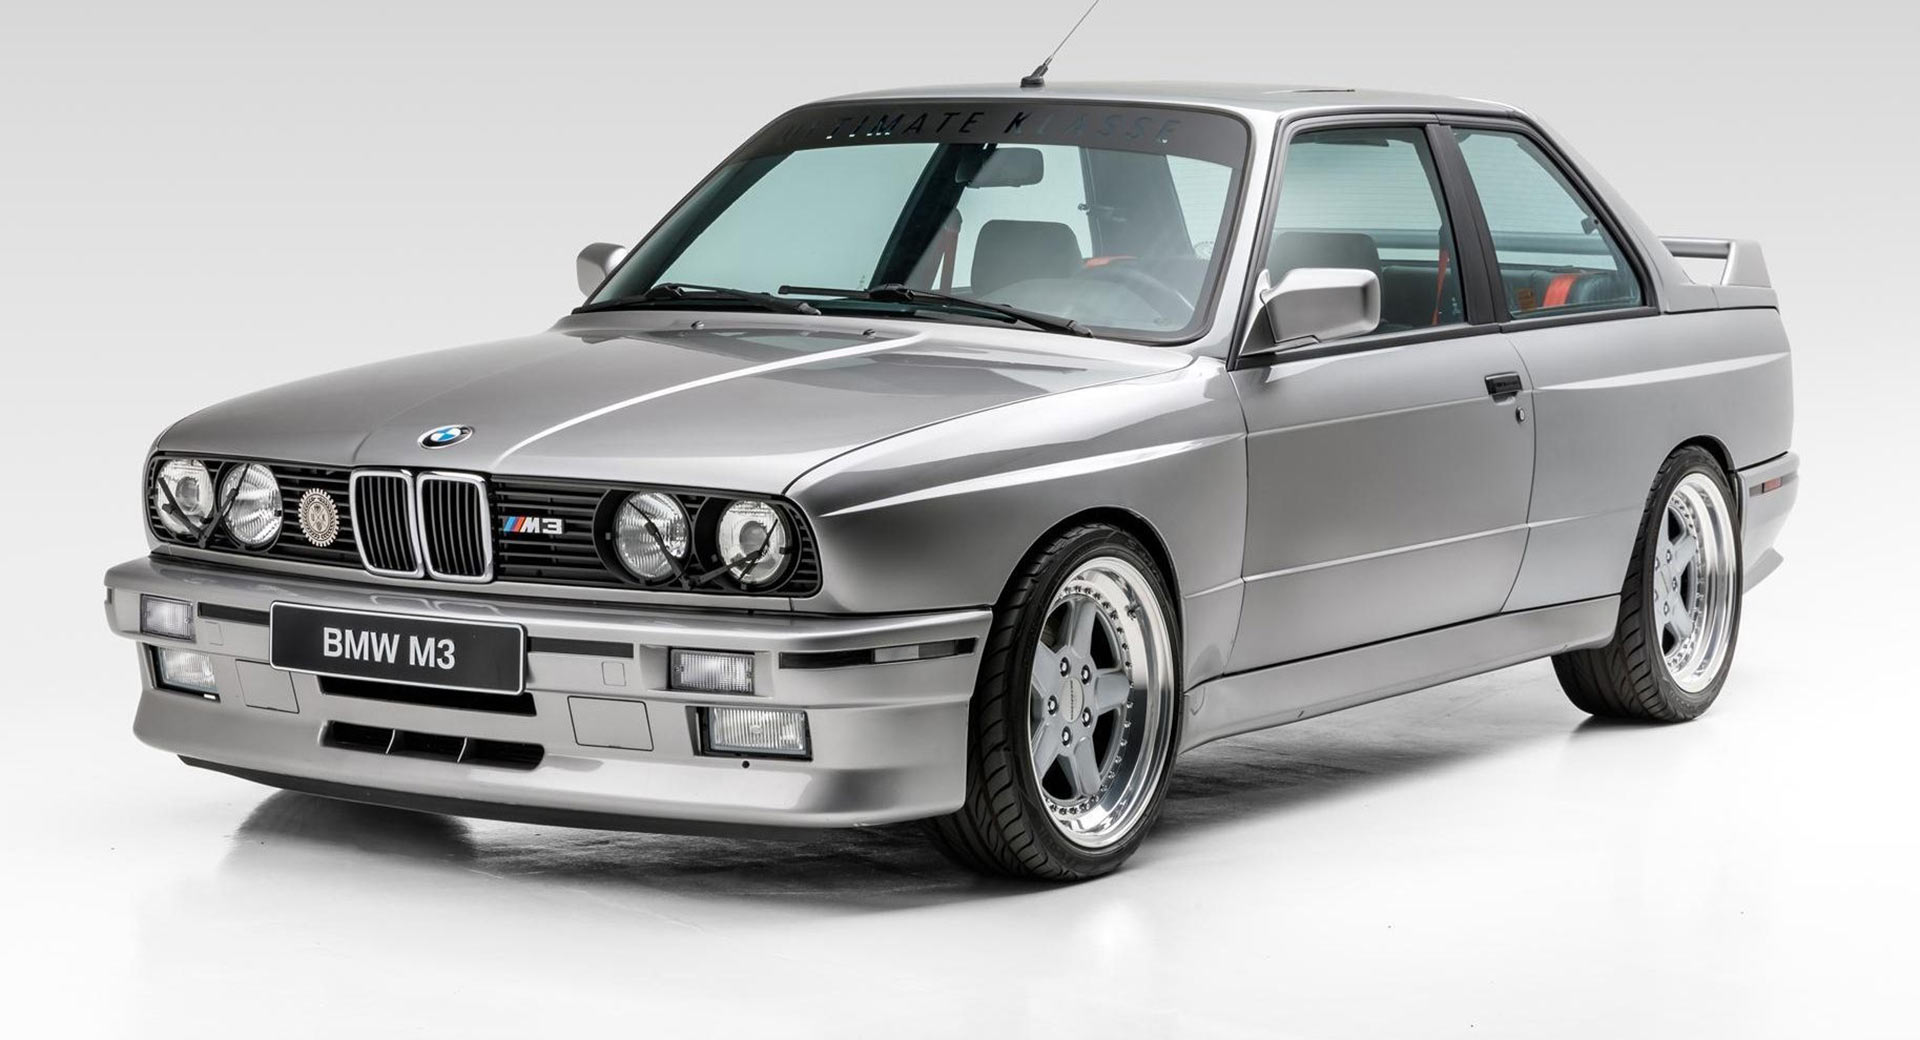 selvfølgelig vedvarende ressource tjene Thoughts On This Tastefully Modified 1988 BMW M3 That Sold For $53,000? |  Carscoops